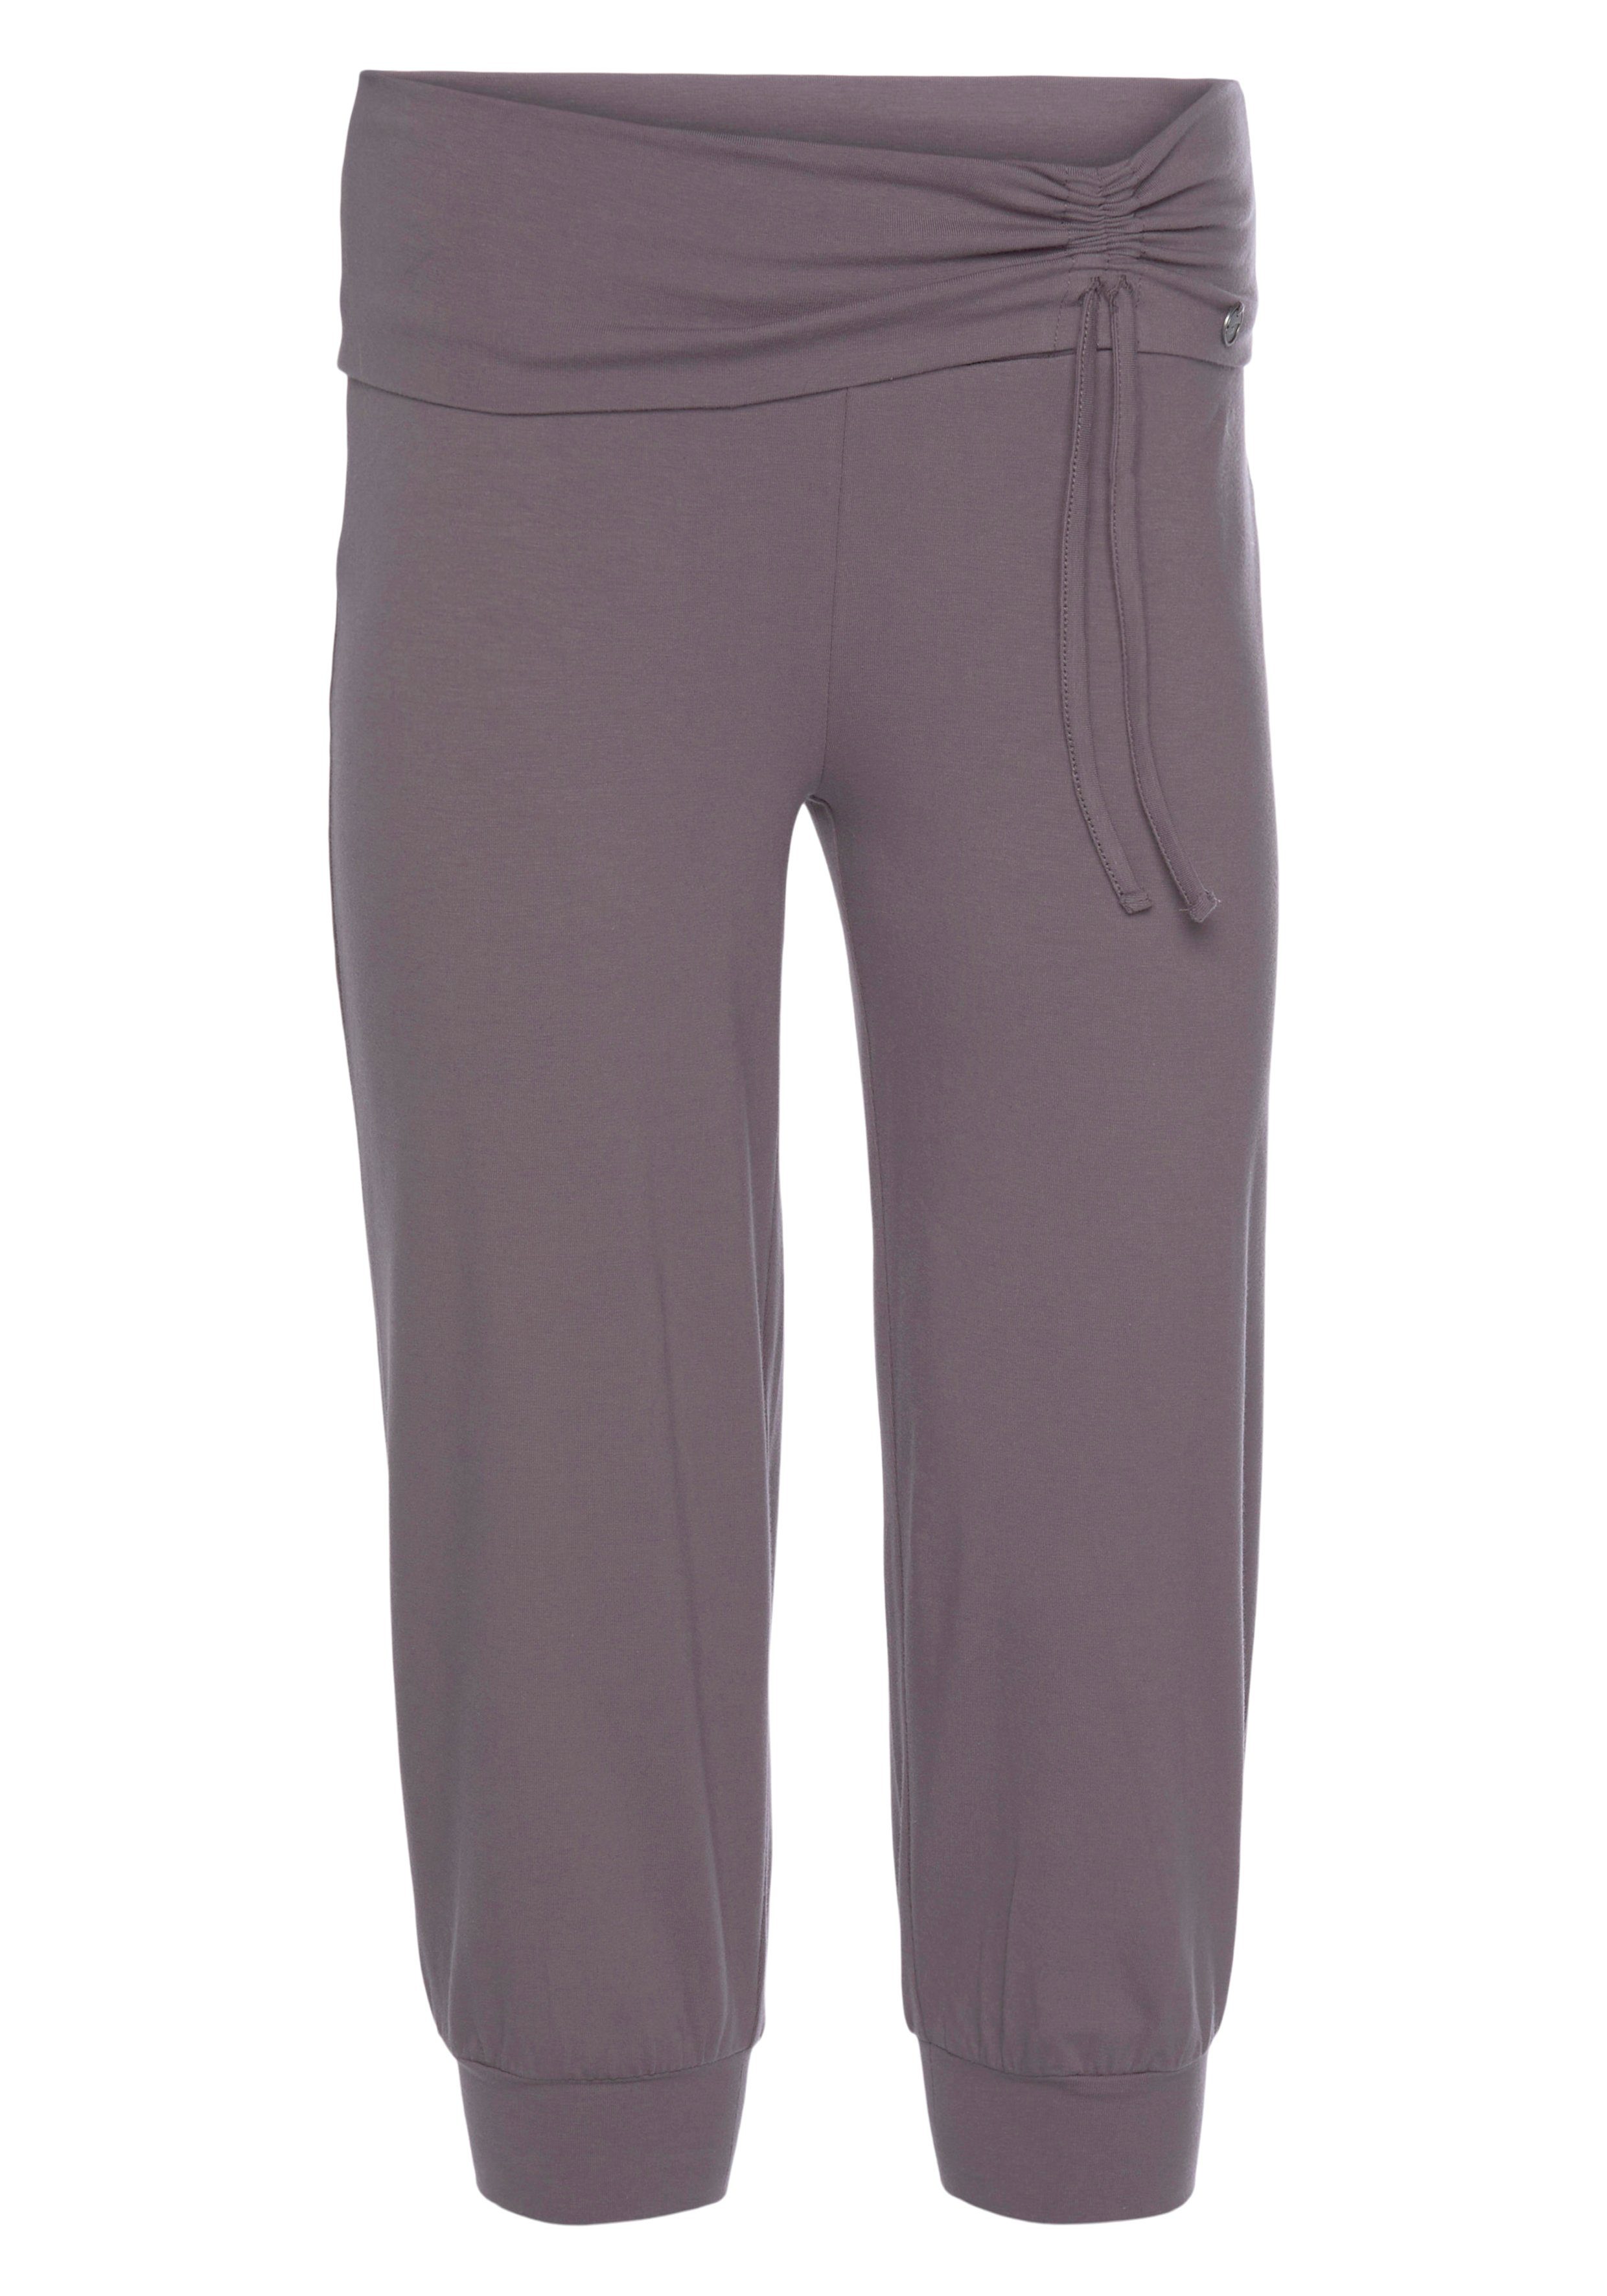 Yoga Ocean Yogahose Soulwear Sportswear Pants 3/4 -